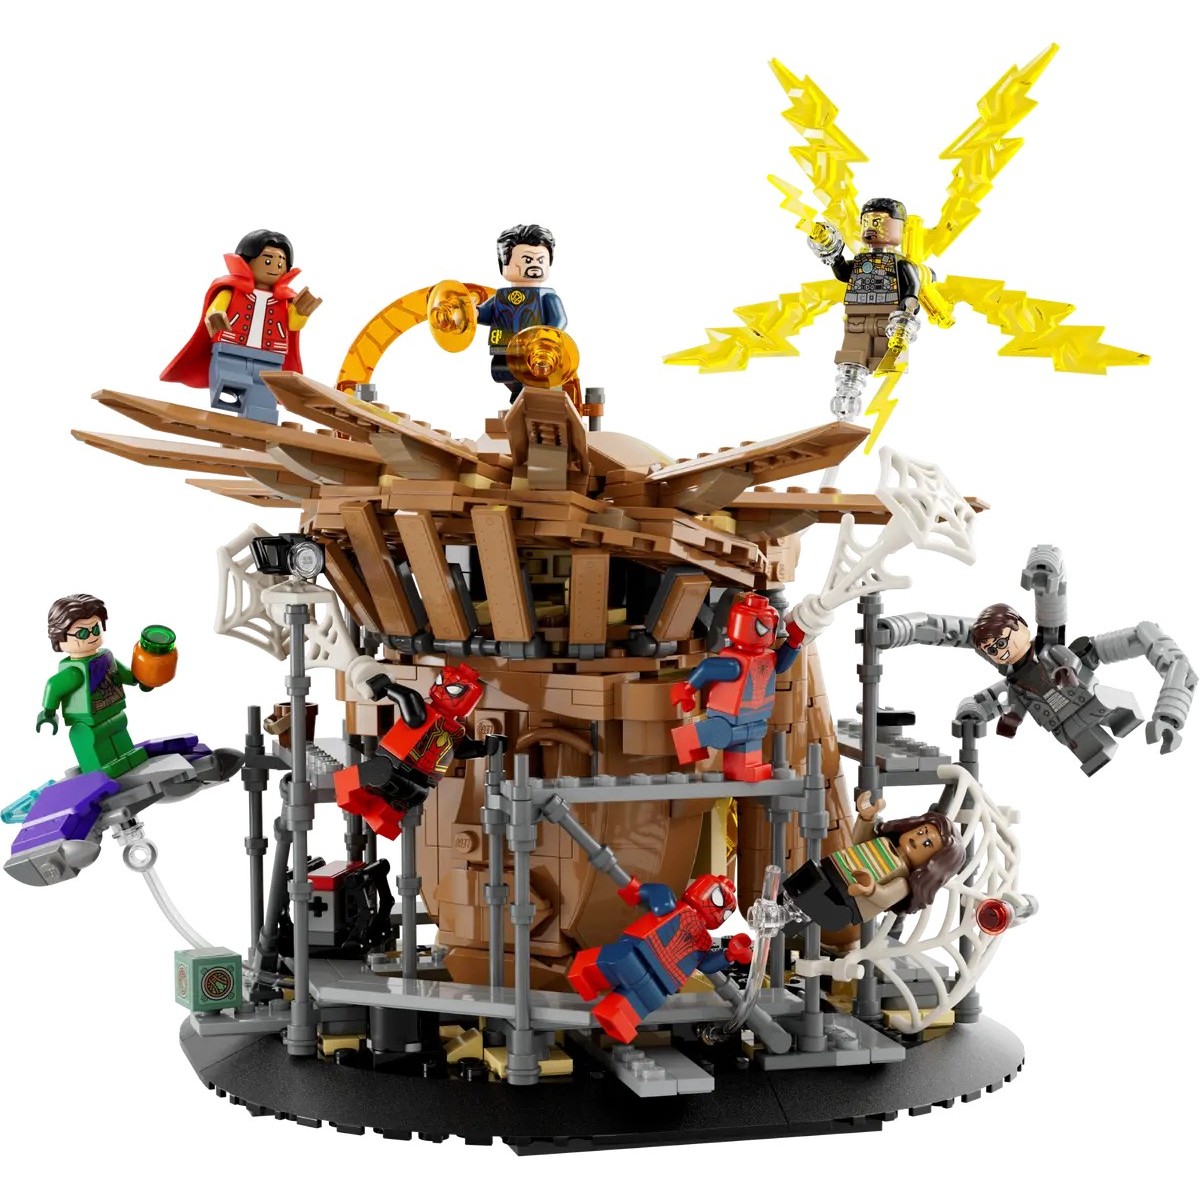 LEGO MARVEL SPIDER-MANOVA POSLEDNA BITKA /76261/